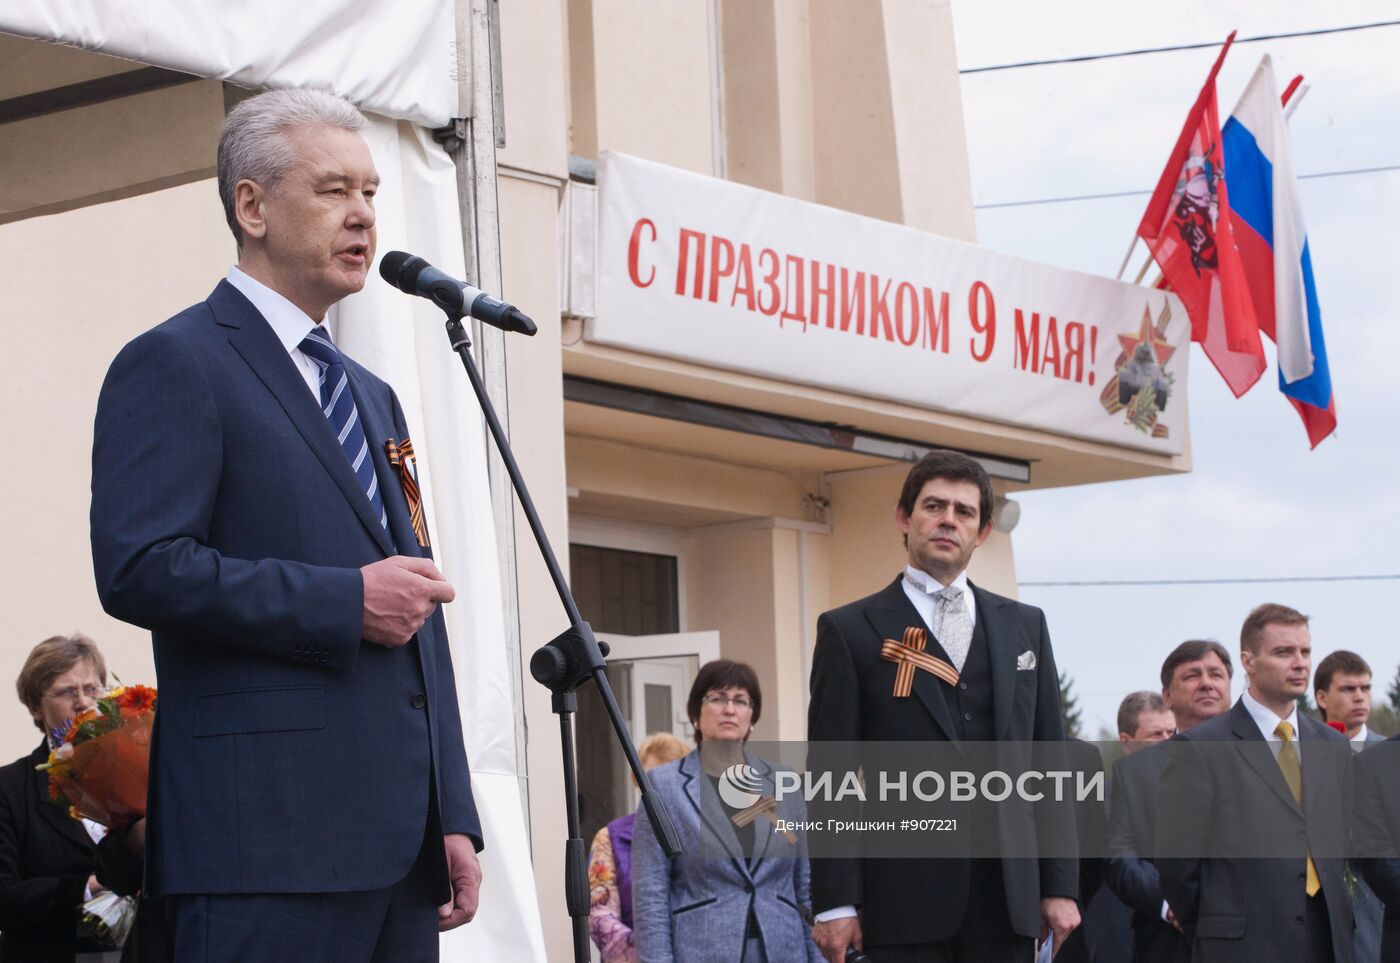 С.Собянин принял участие в церемонии закладки памятной капсулы